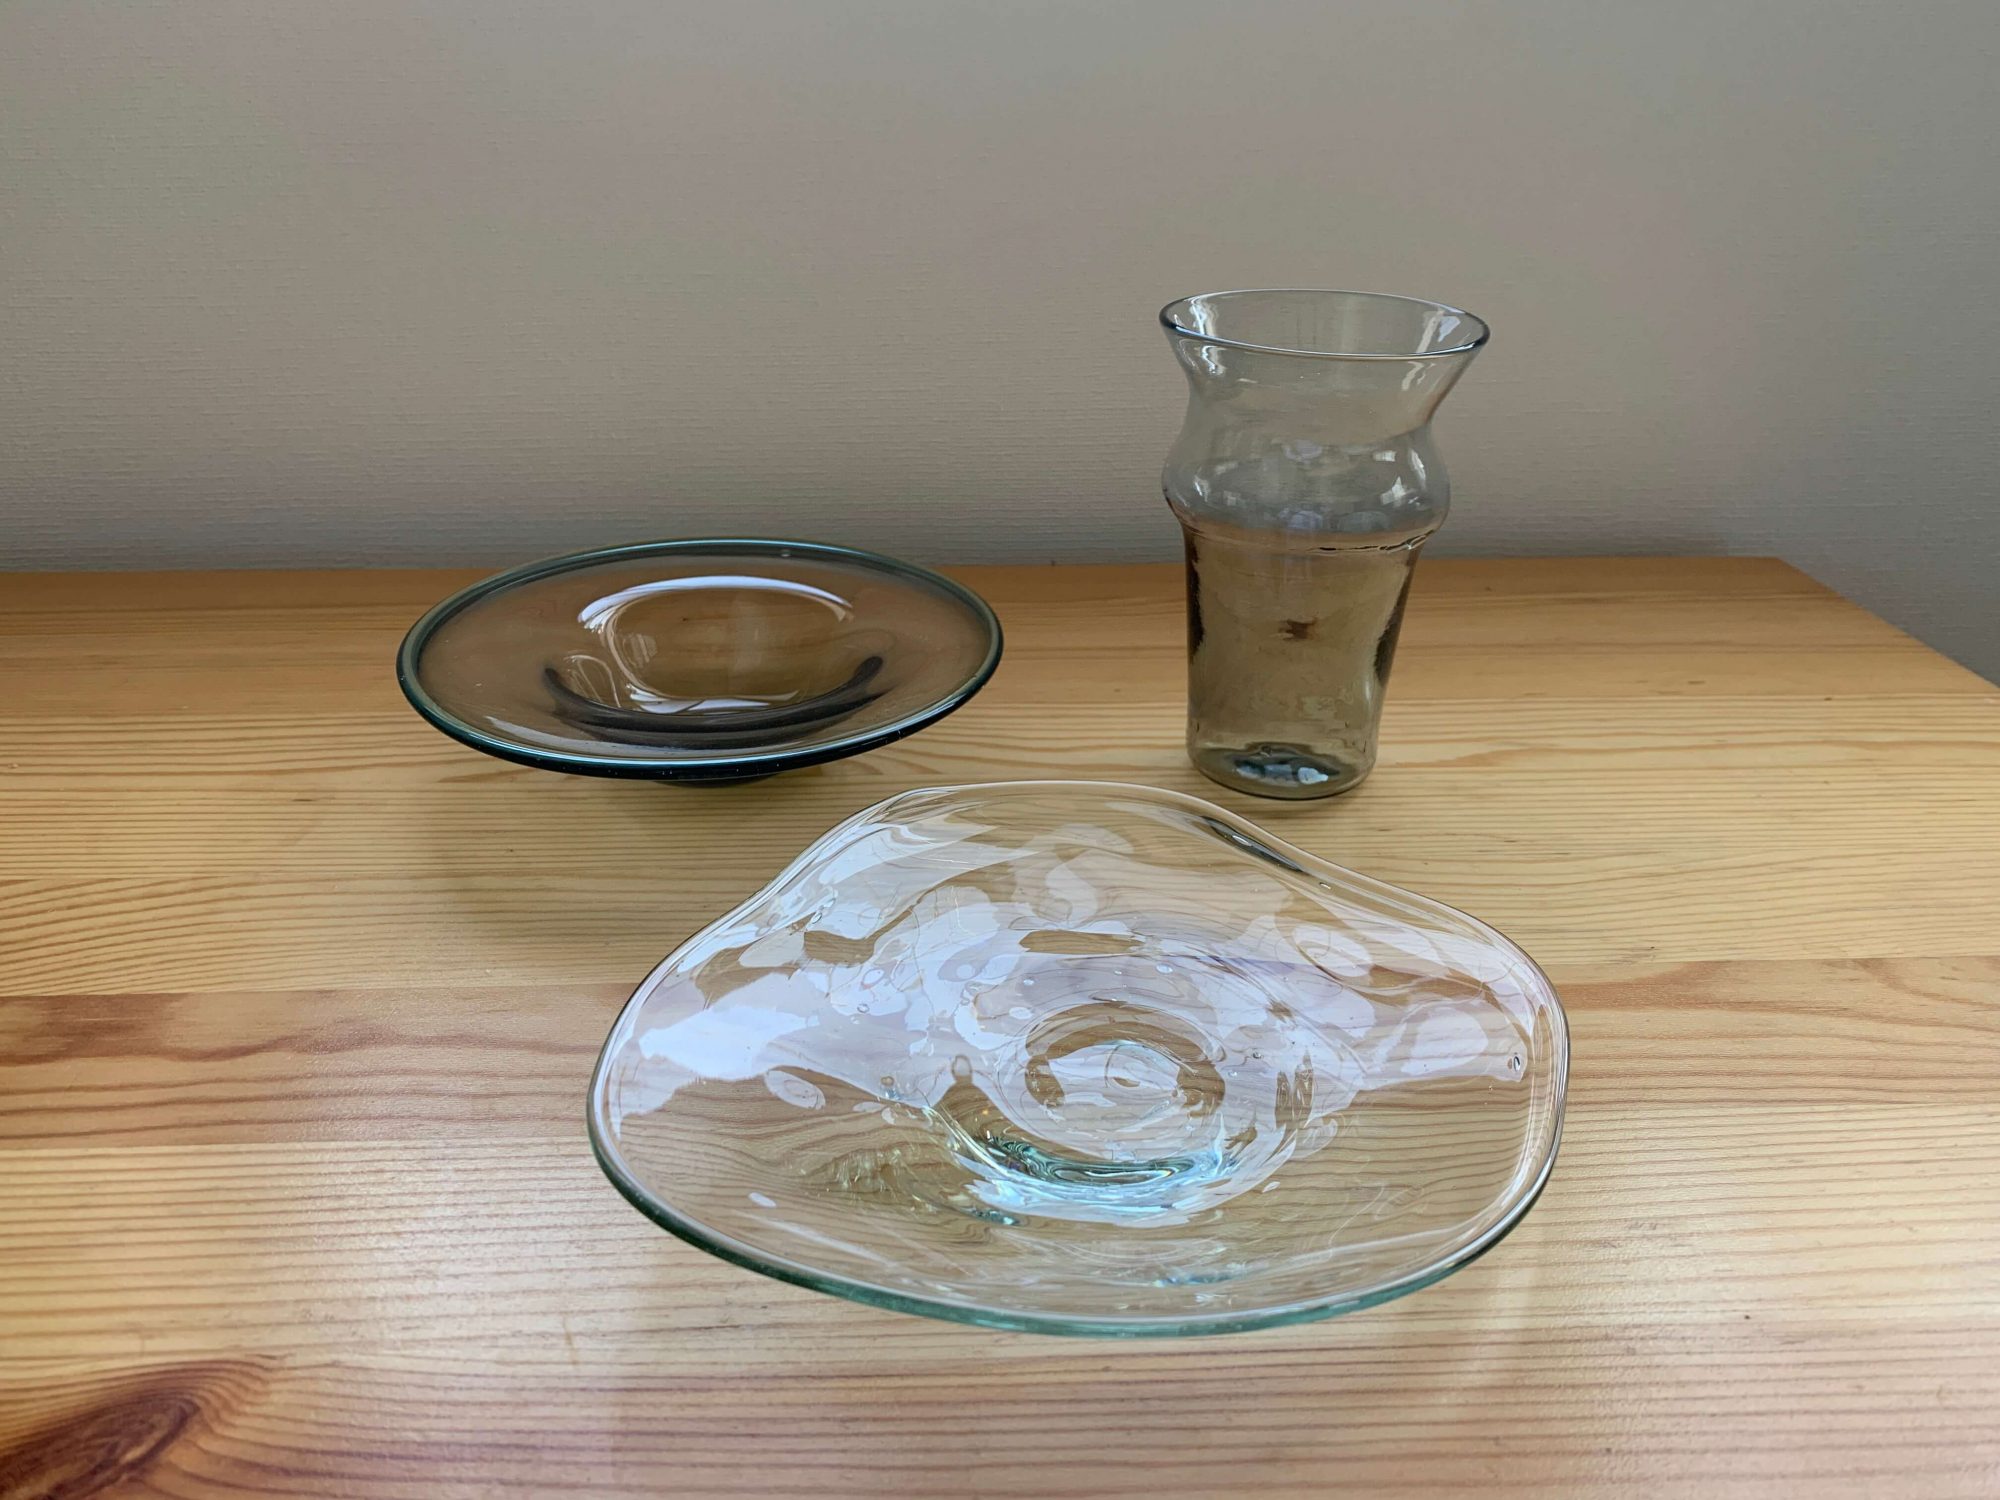 お皿は一般的なものと比べると厚め、大きなグラスは他のアイテムに比べると薄く軽いです。繊細なので洗うときは慎重に。